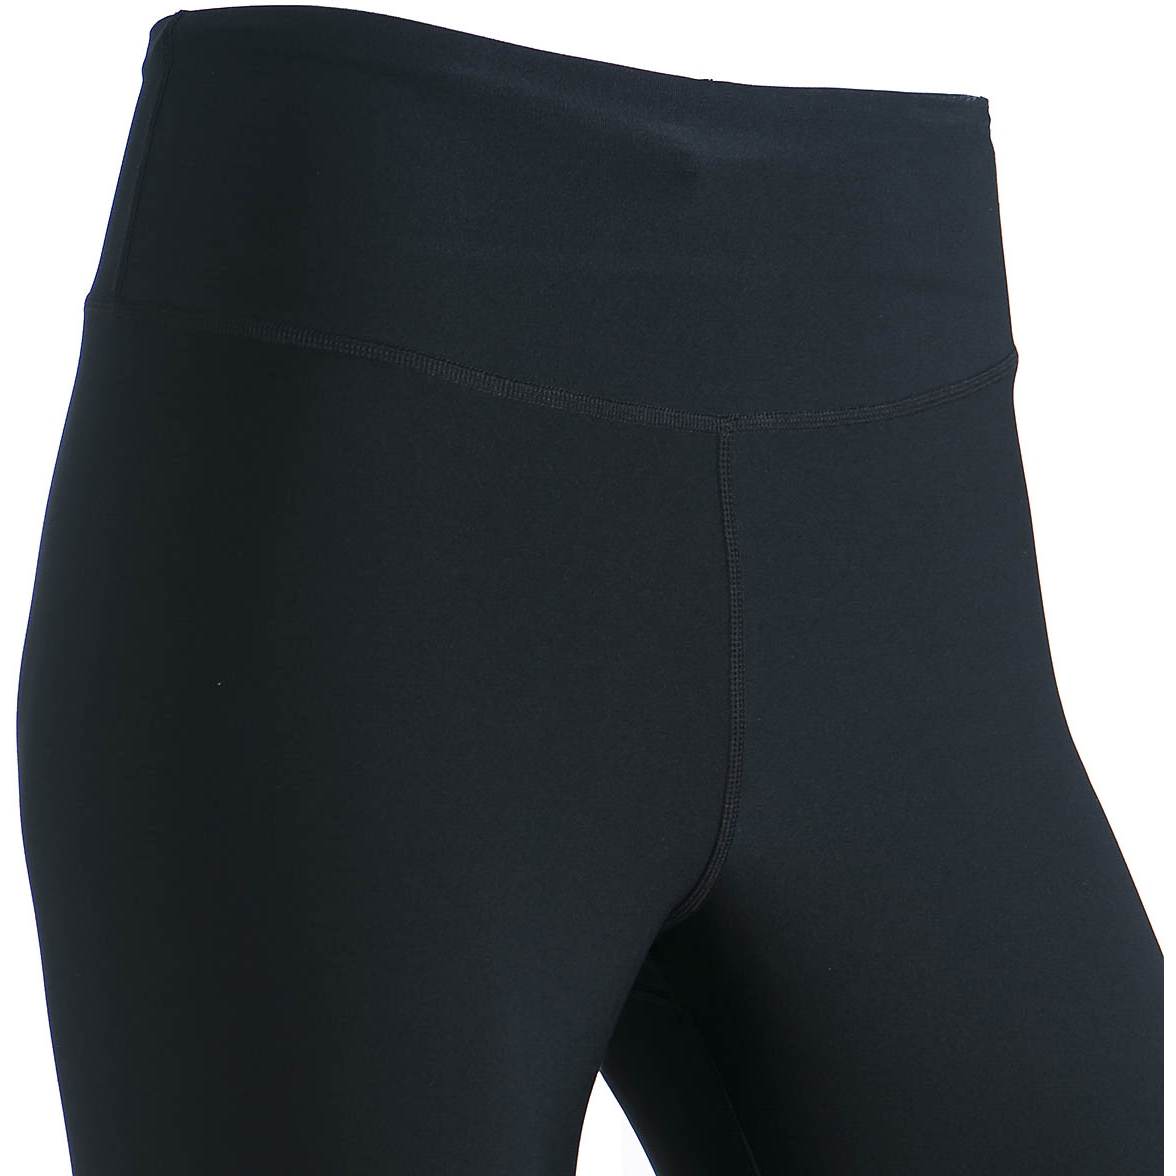 Nike Dri-fit Flex Bliss Luxe Training Pants | Navy Blue | Women's Size XS |  eBay